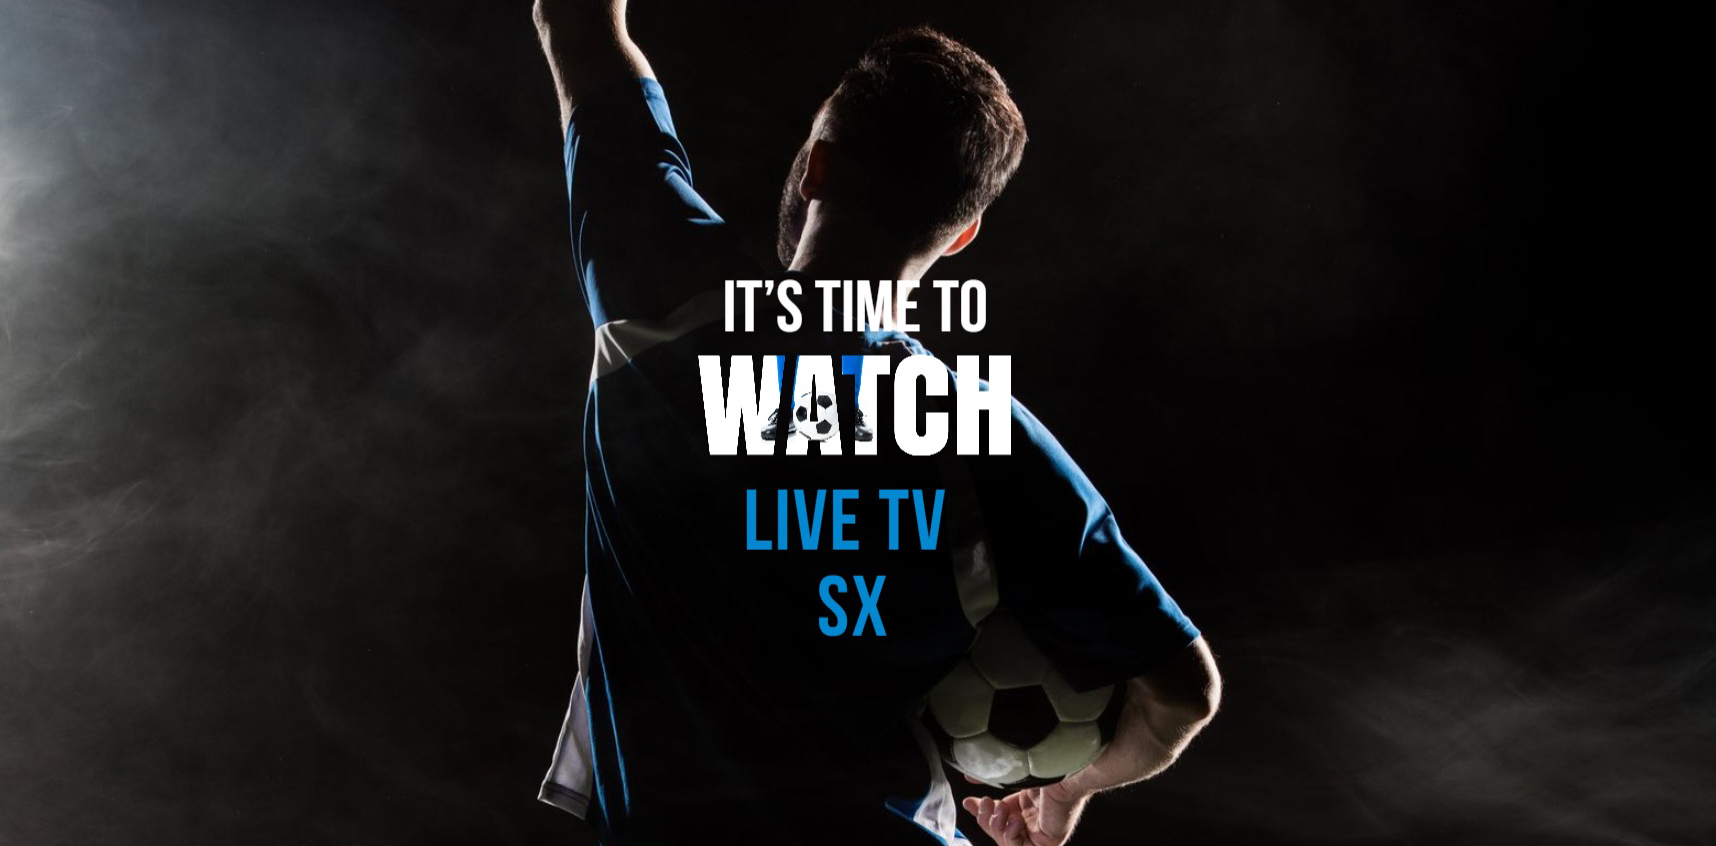 Live TV SX: شاهد البث المباشر للرياضة مجانًا